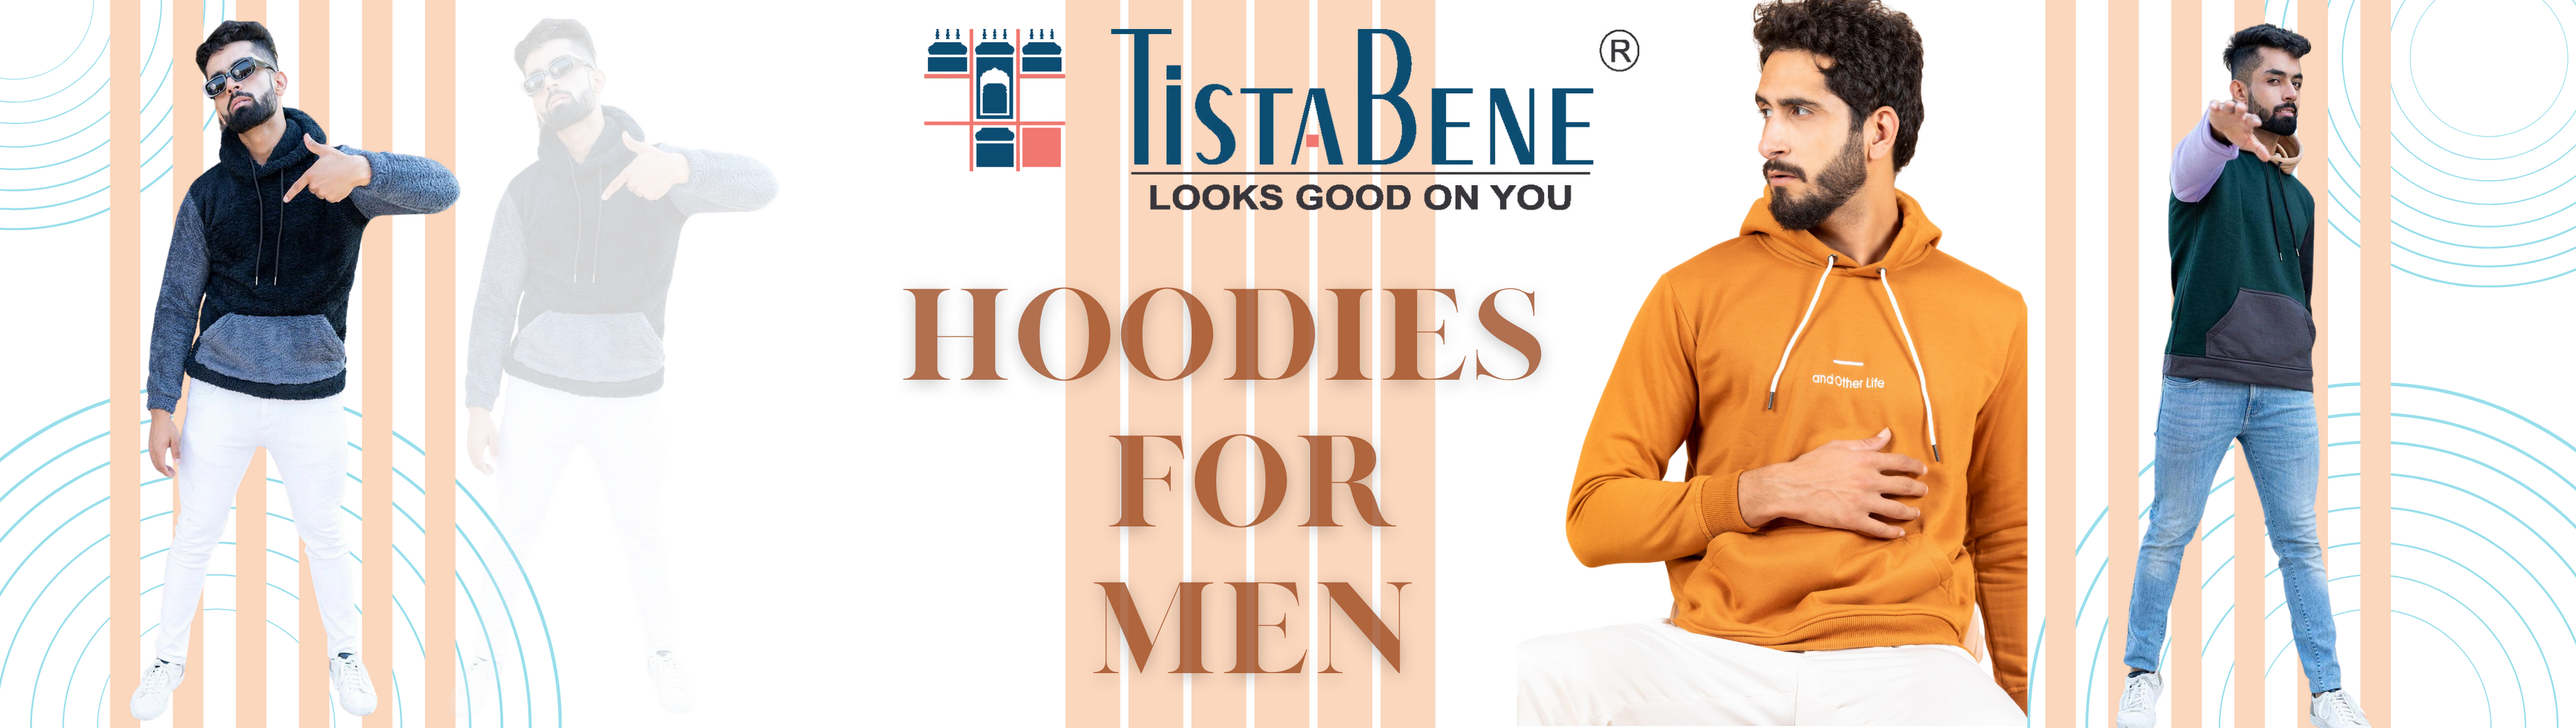 hoodies for men 